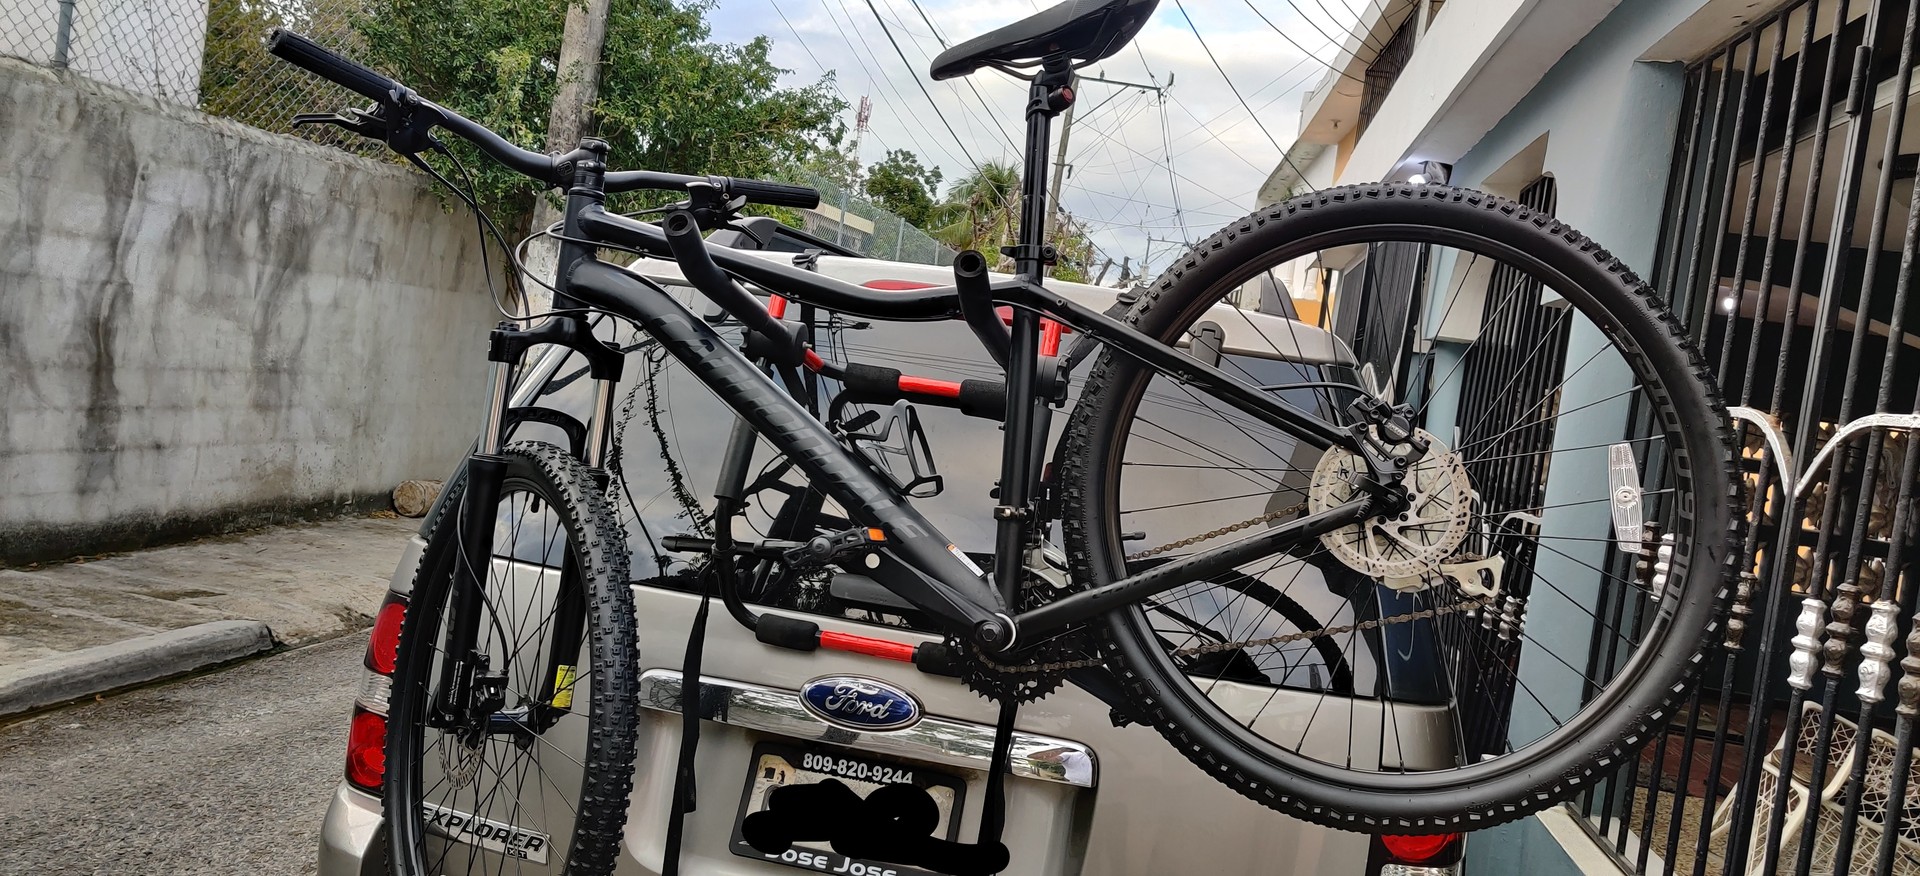 bicicletas y accesorios - Bicicleta Cannondale Aro 27.5 size M 2019 nueva ..